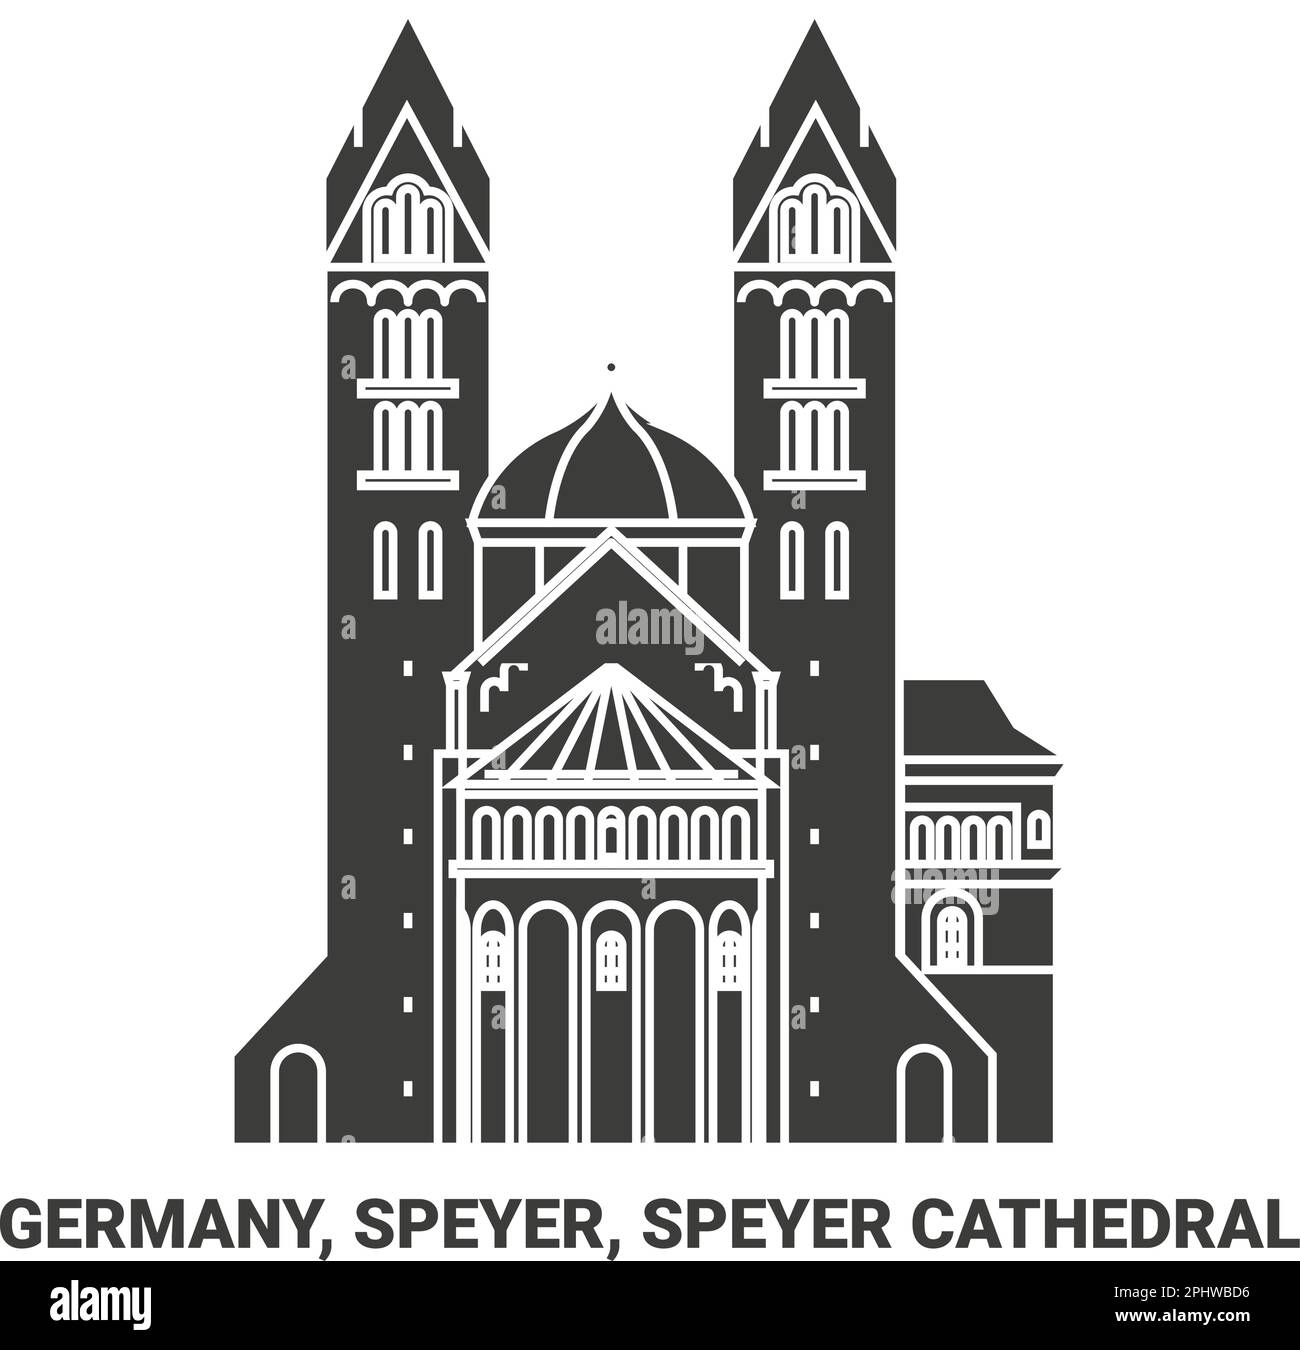 Deutschland, Speyer, Speyer-Kathedrale Reise-Wahrzeichen-Vektordarstellung Stock Vektor